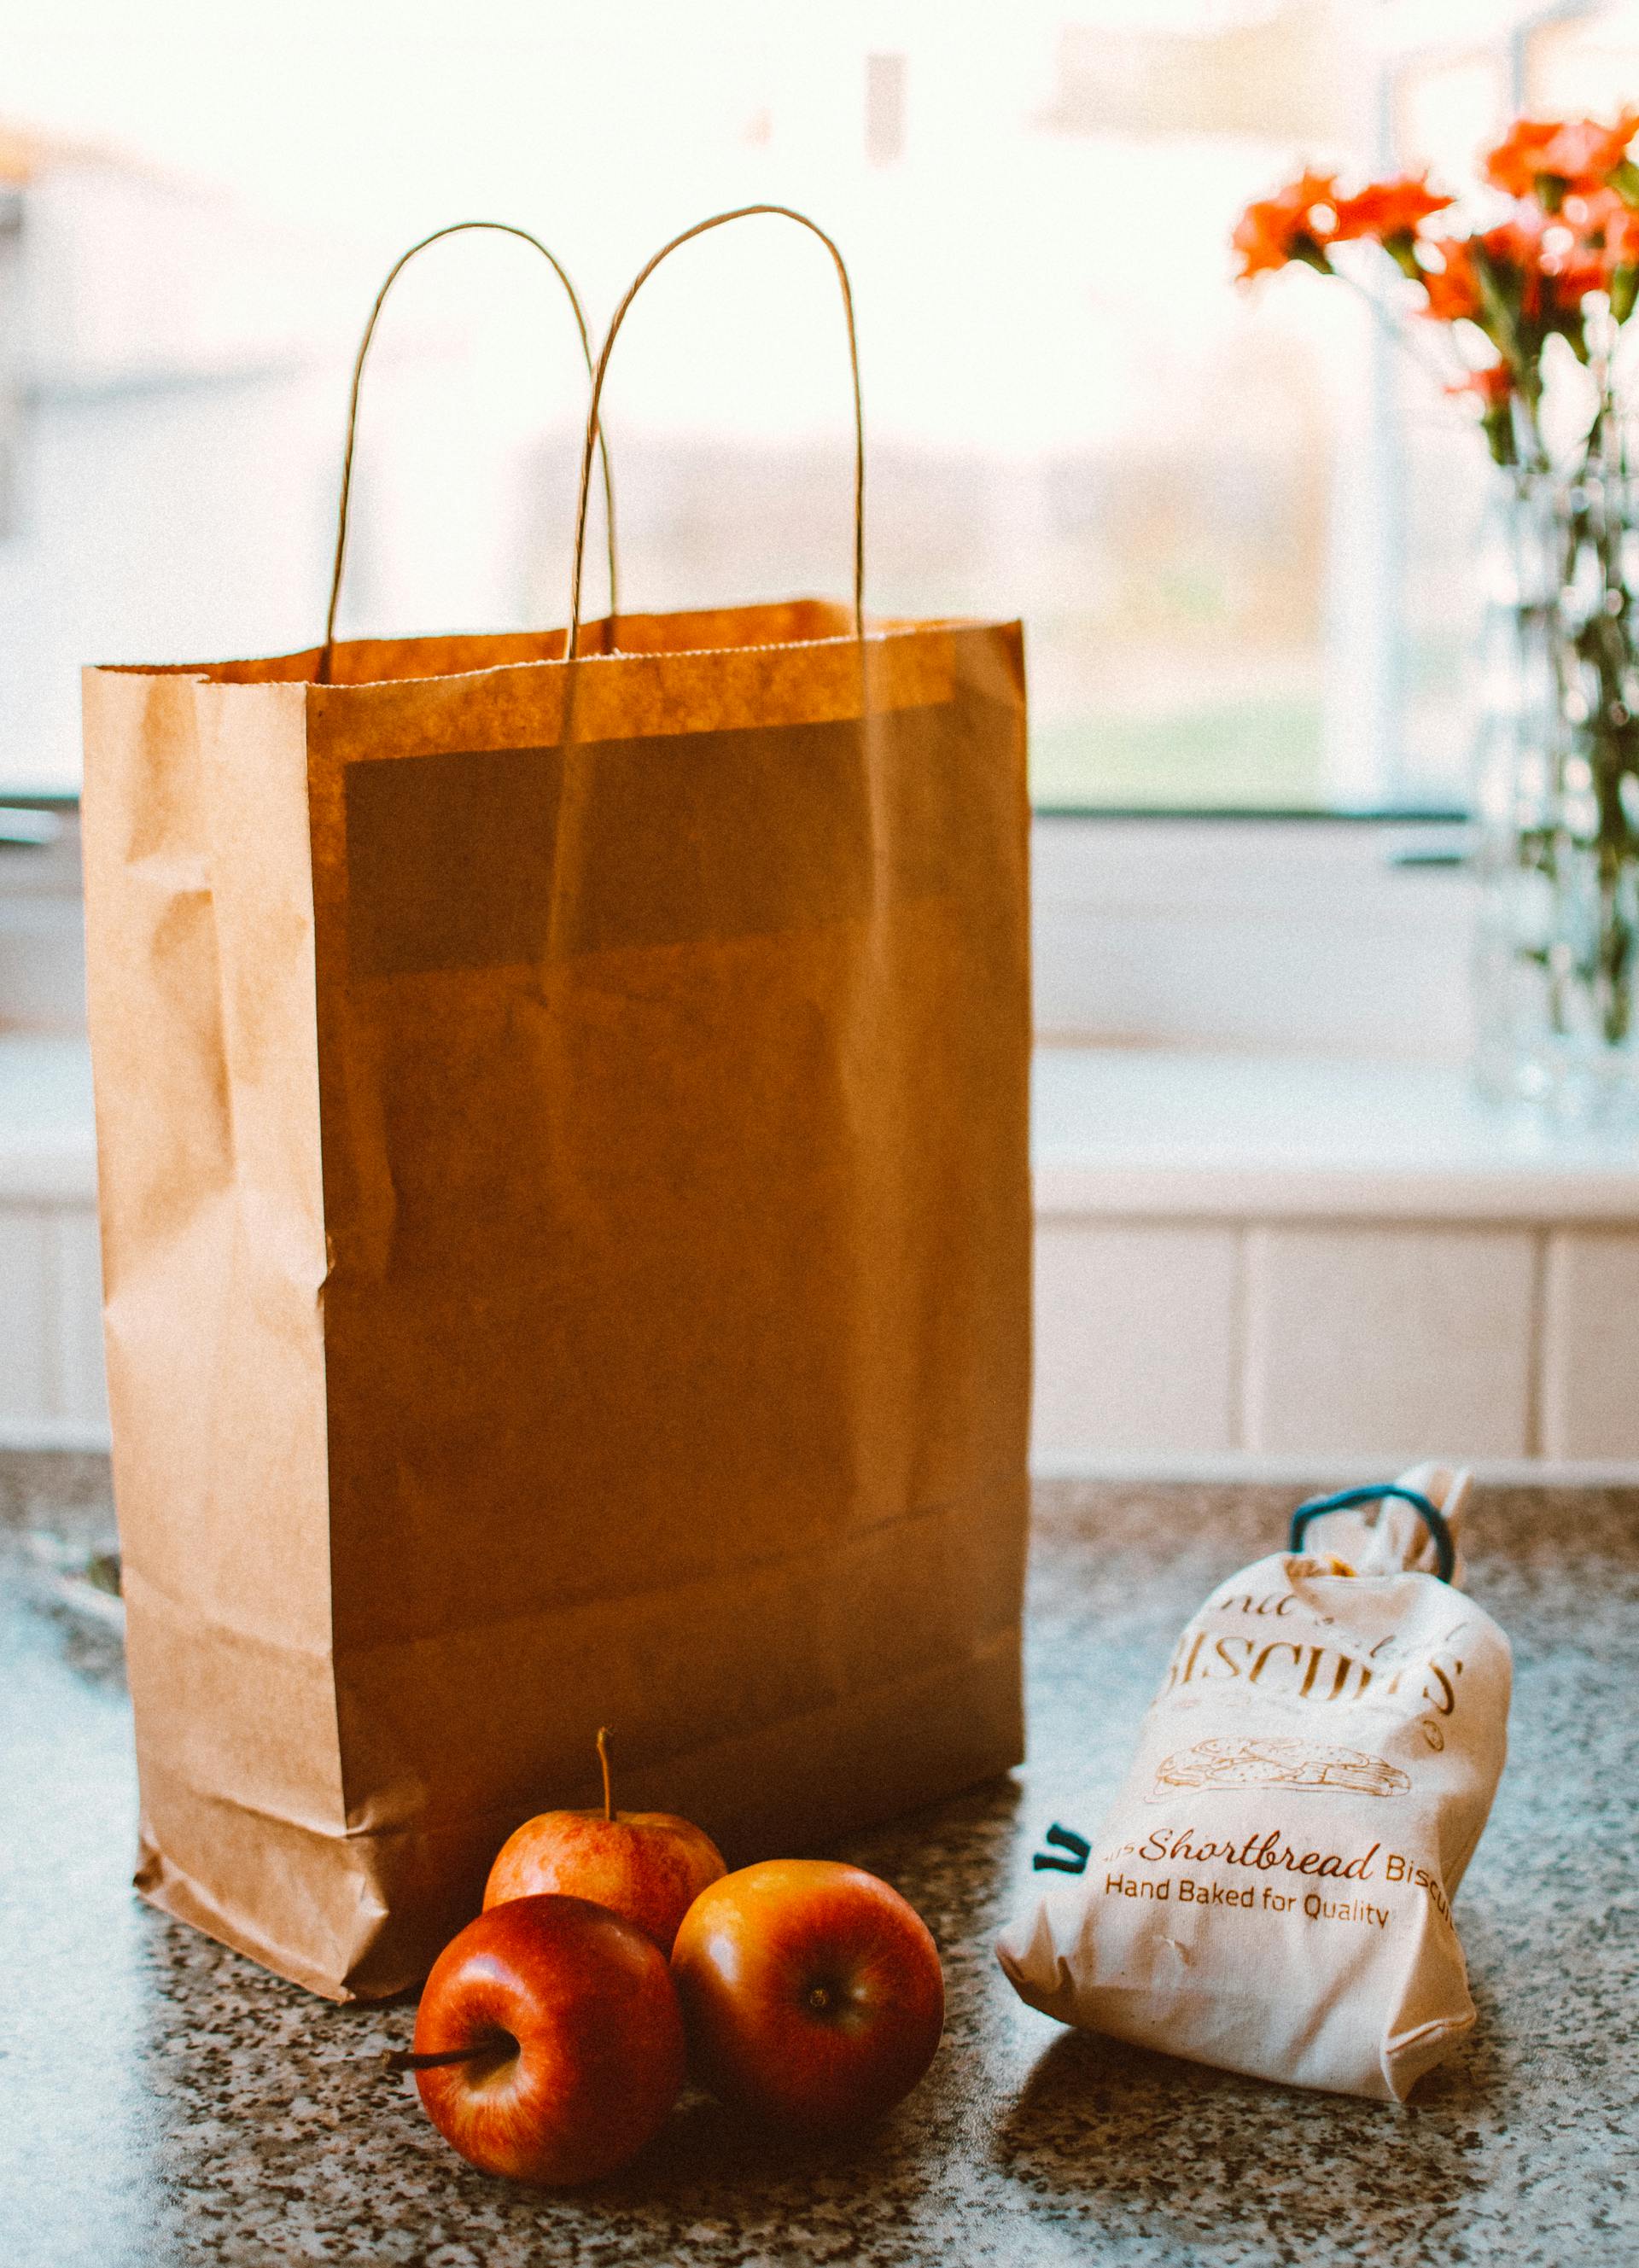 Plusieurs pommes posées à côté d'un sac en papier brun et d'un paquet de pain | Source : Pexels